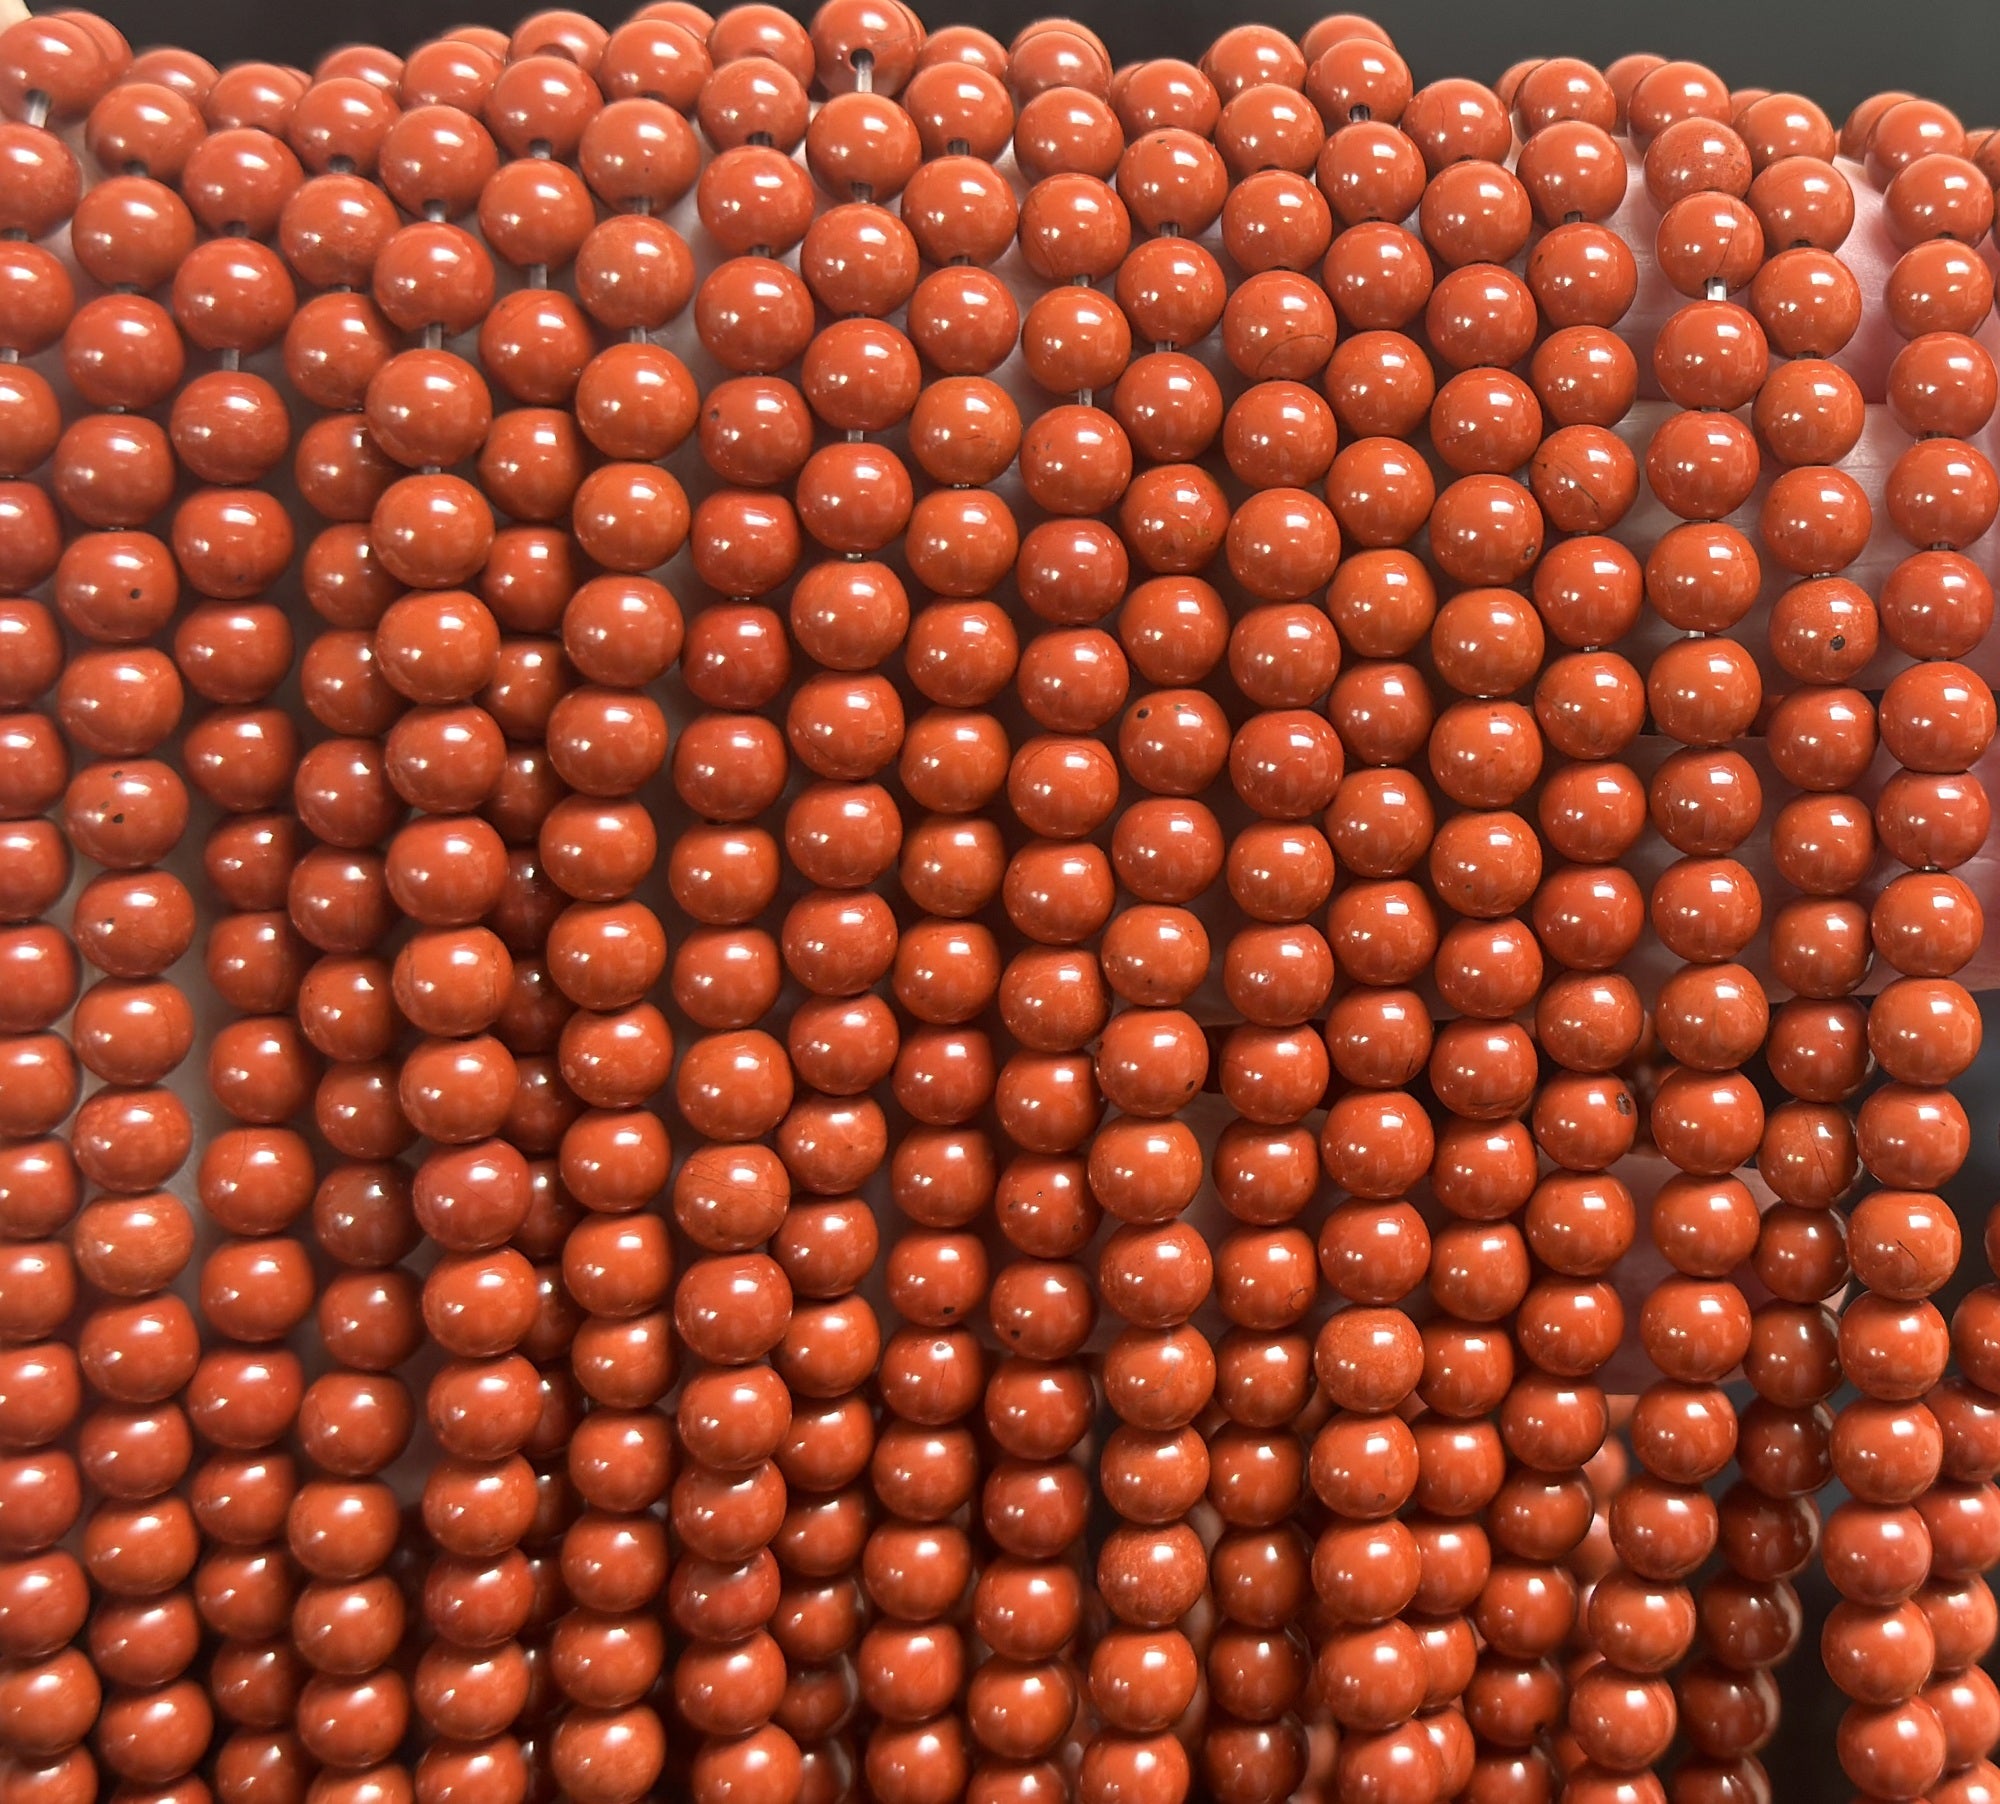 Red Jasper 6mm round natural gemstone beads 15" strand